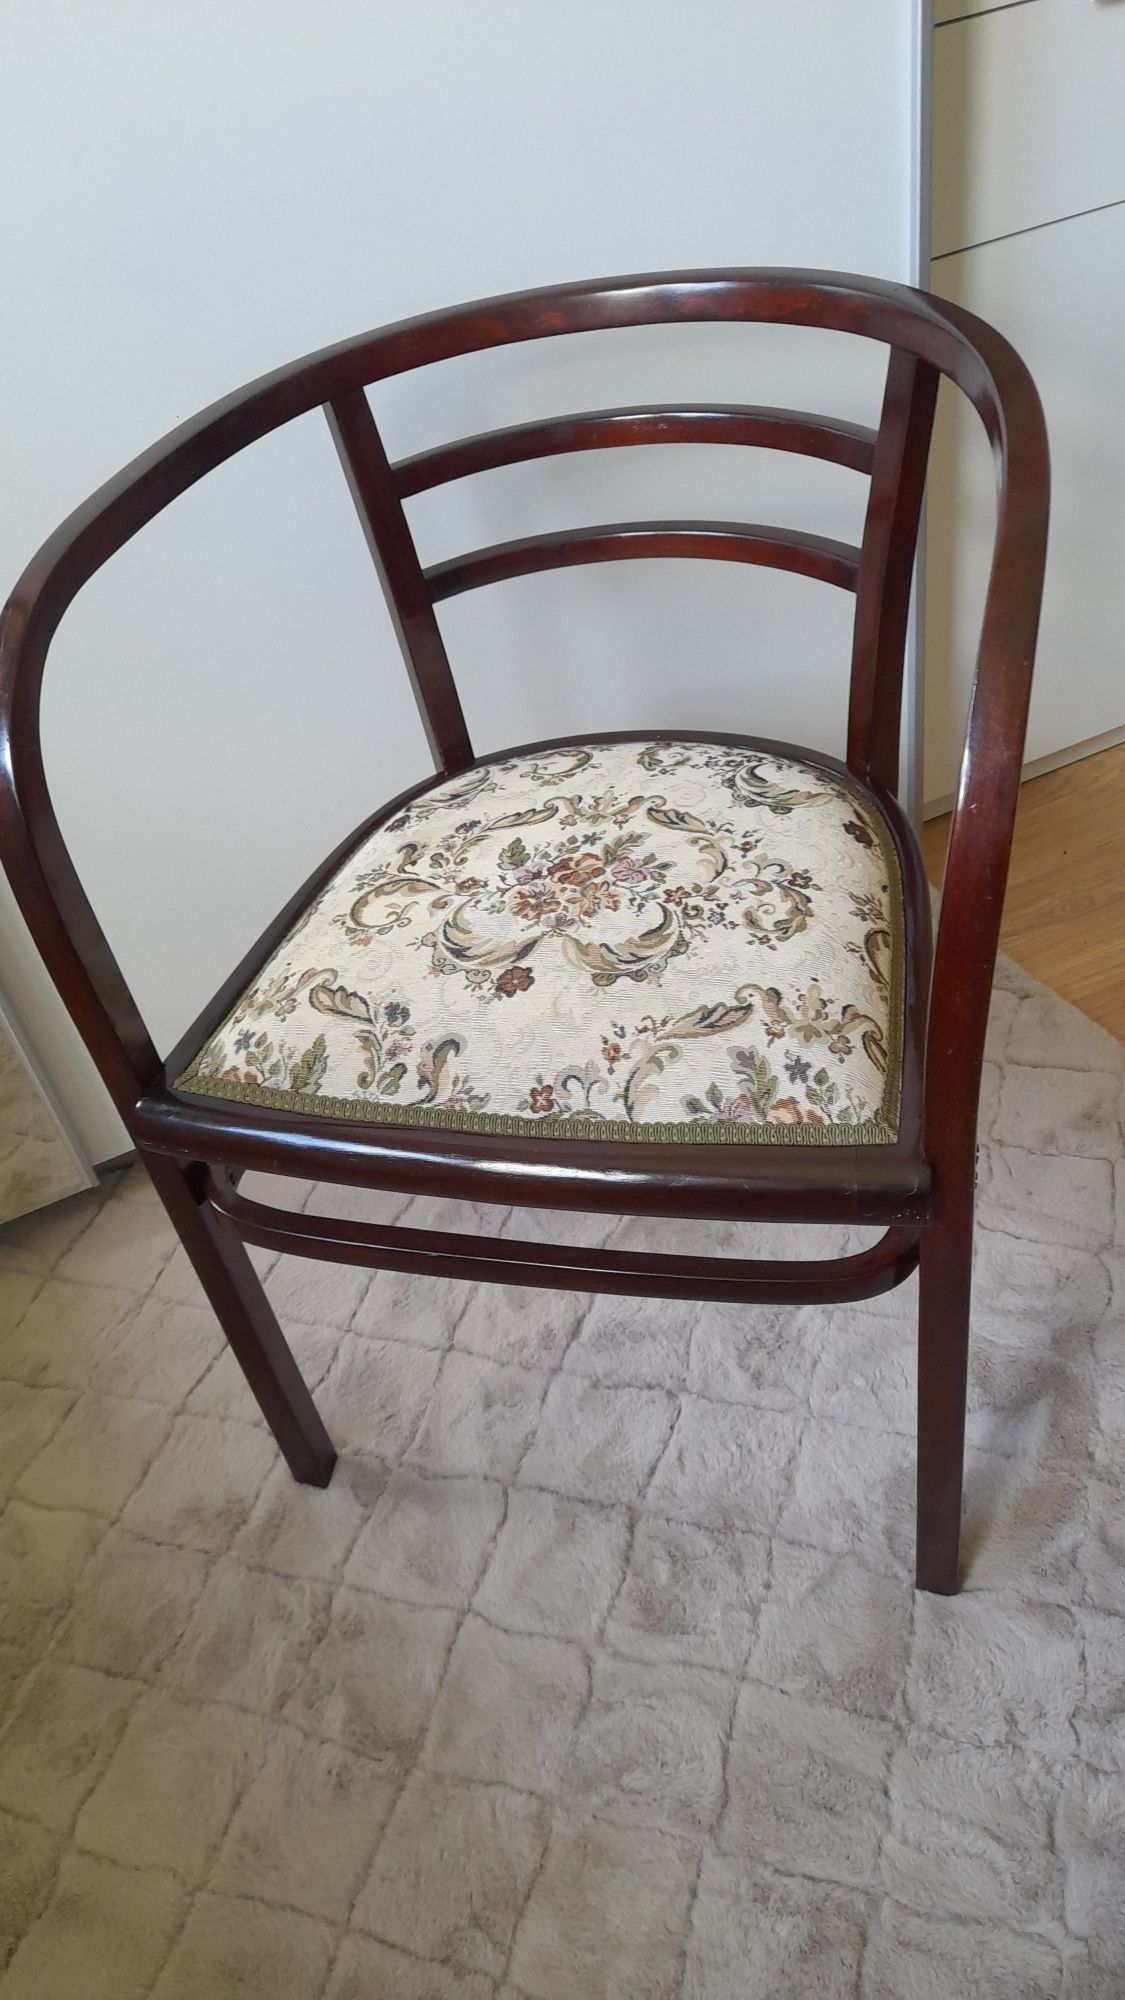 Fotel w stylu Thonet  - odrestaurowany